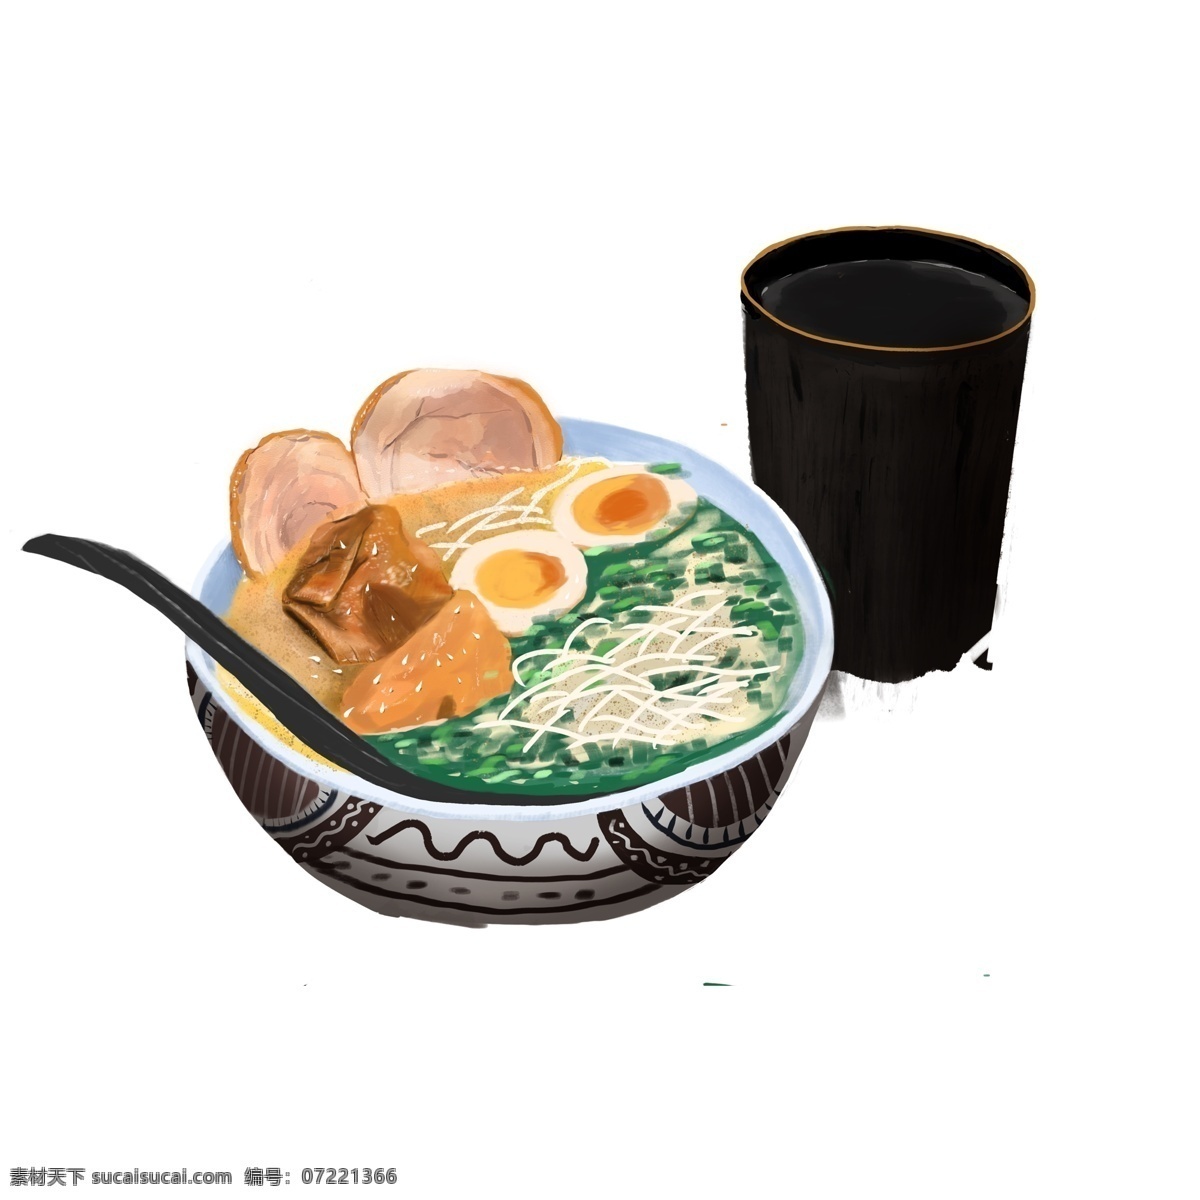 手绘 日本 美食 拉面 商用 元素 日式 食物 插画设计